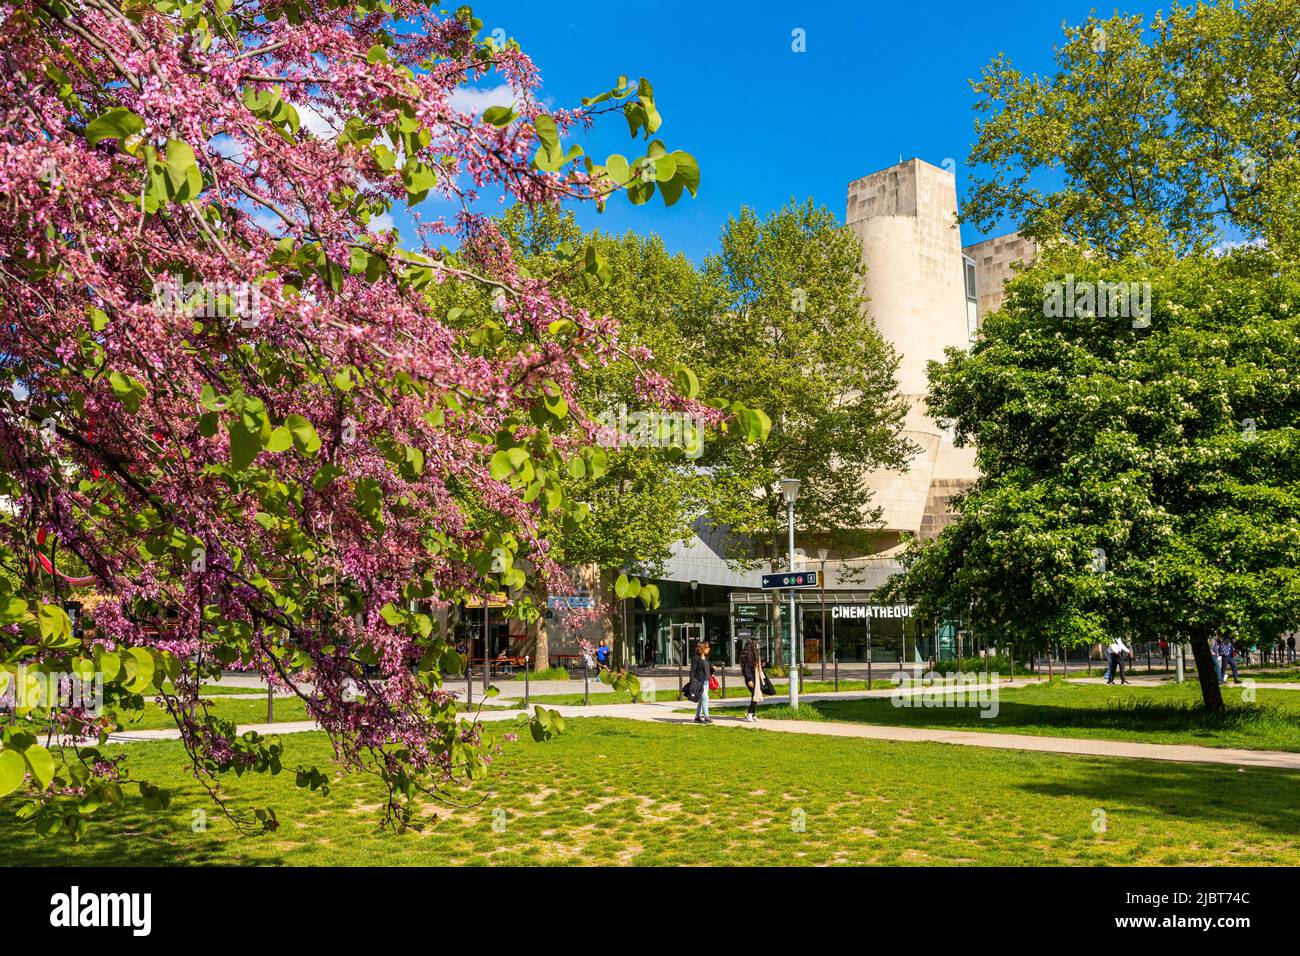 Frankreich, Paris, Bercy Park, die französische Kinemathek des Architekten Frank O. Gehry Stockfoto